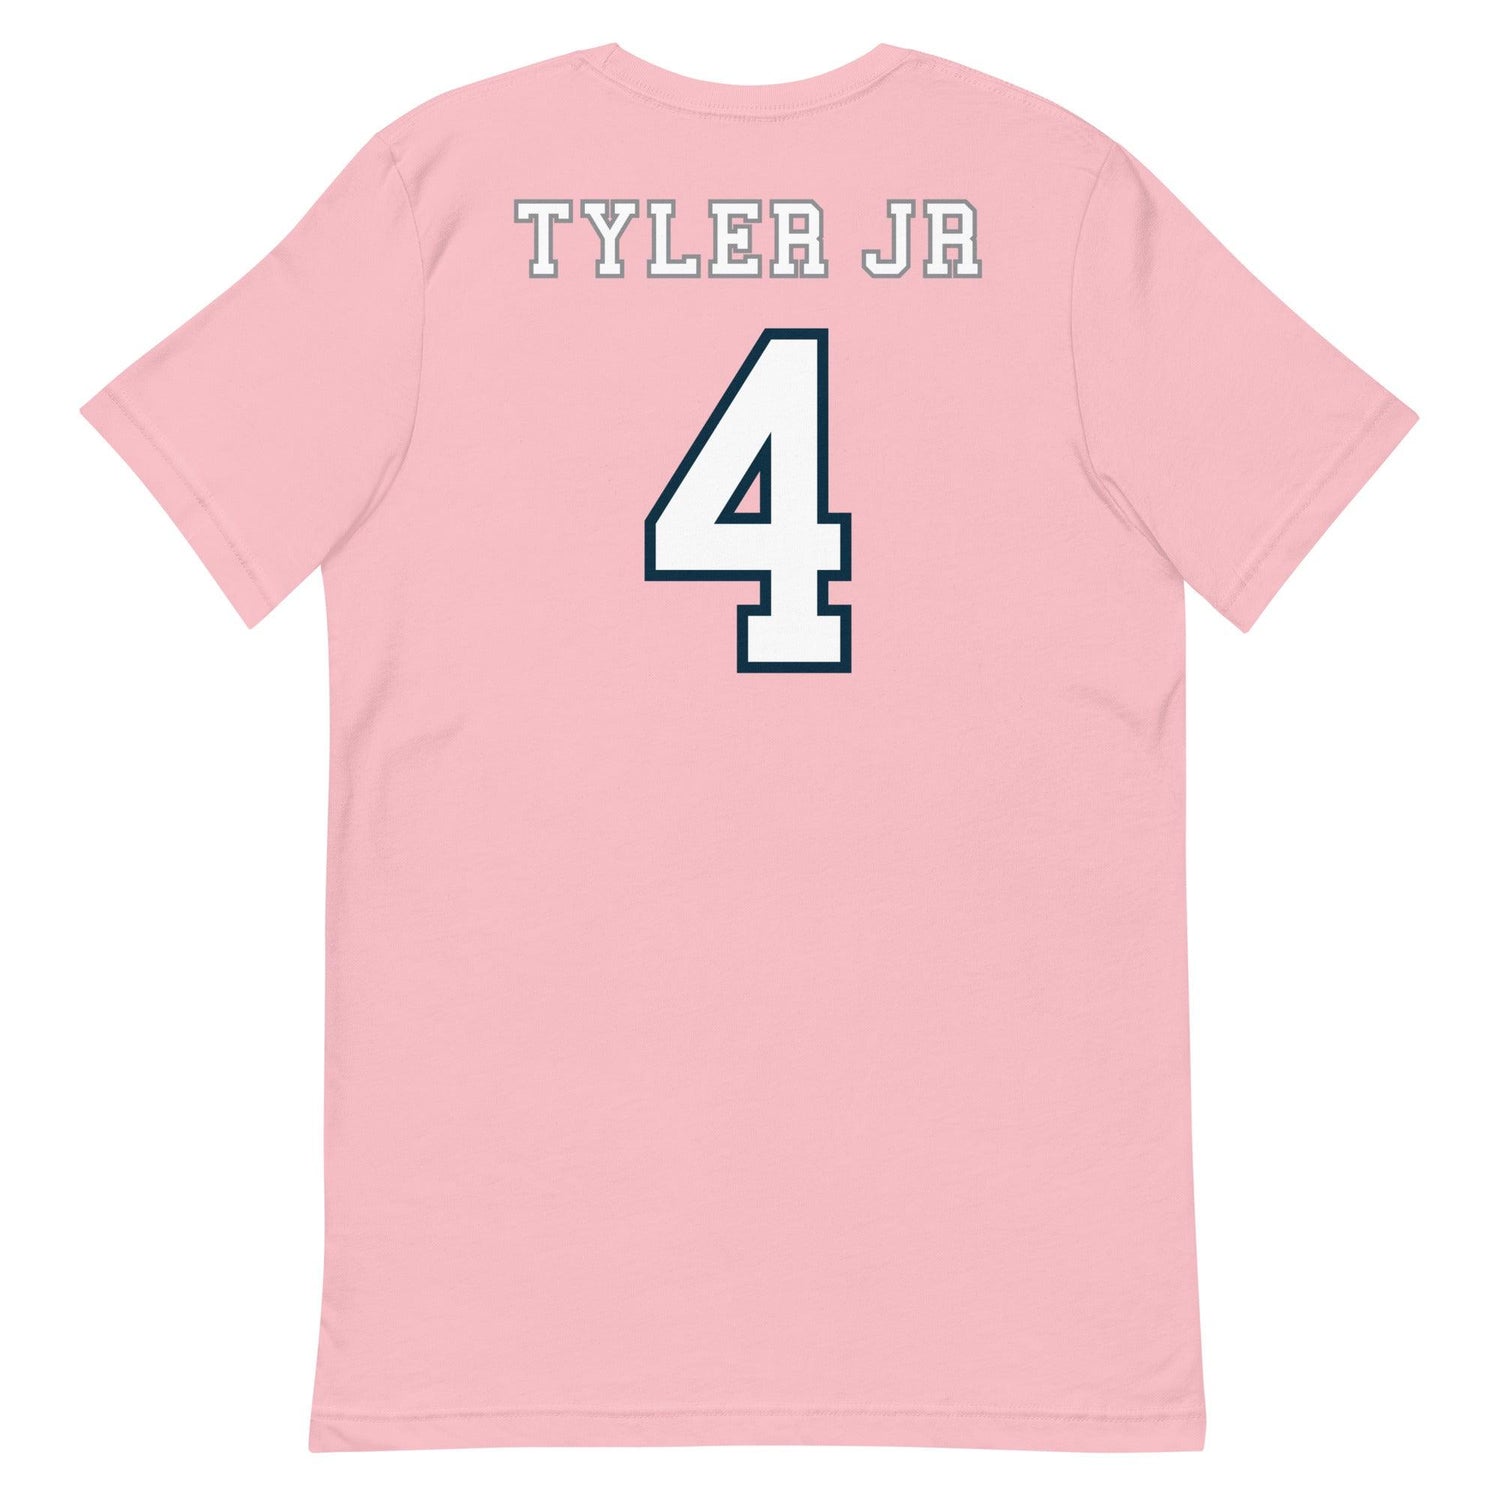 Calvin Tyler Jr. "Jersey" t-shirt - Fan Arch